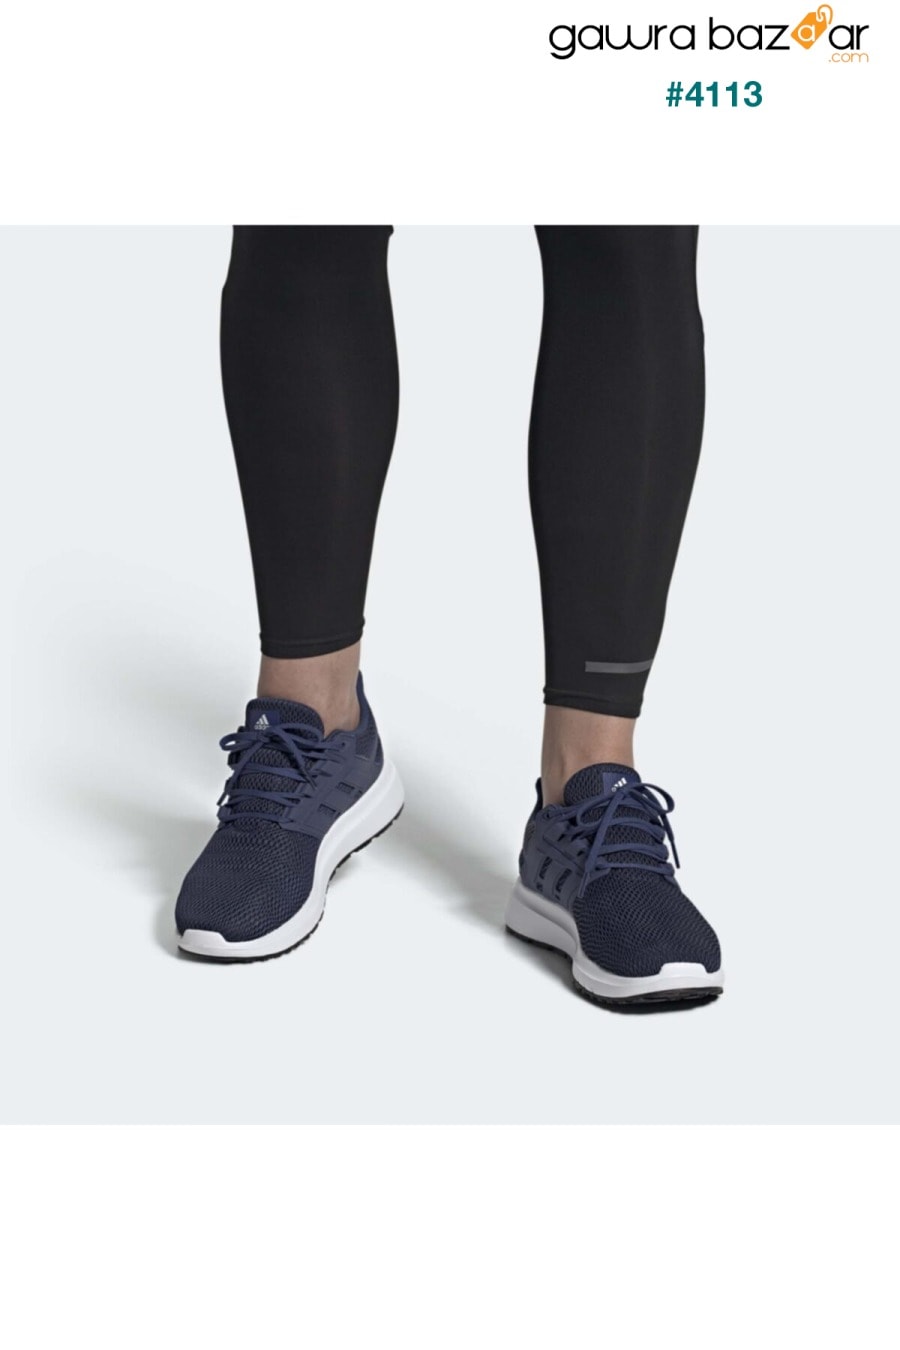 ULTIMASHOW حذاء الجري للرجال باللون الأزرق الداكن 100663973 adidas 2